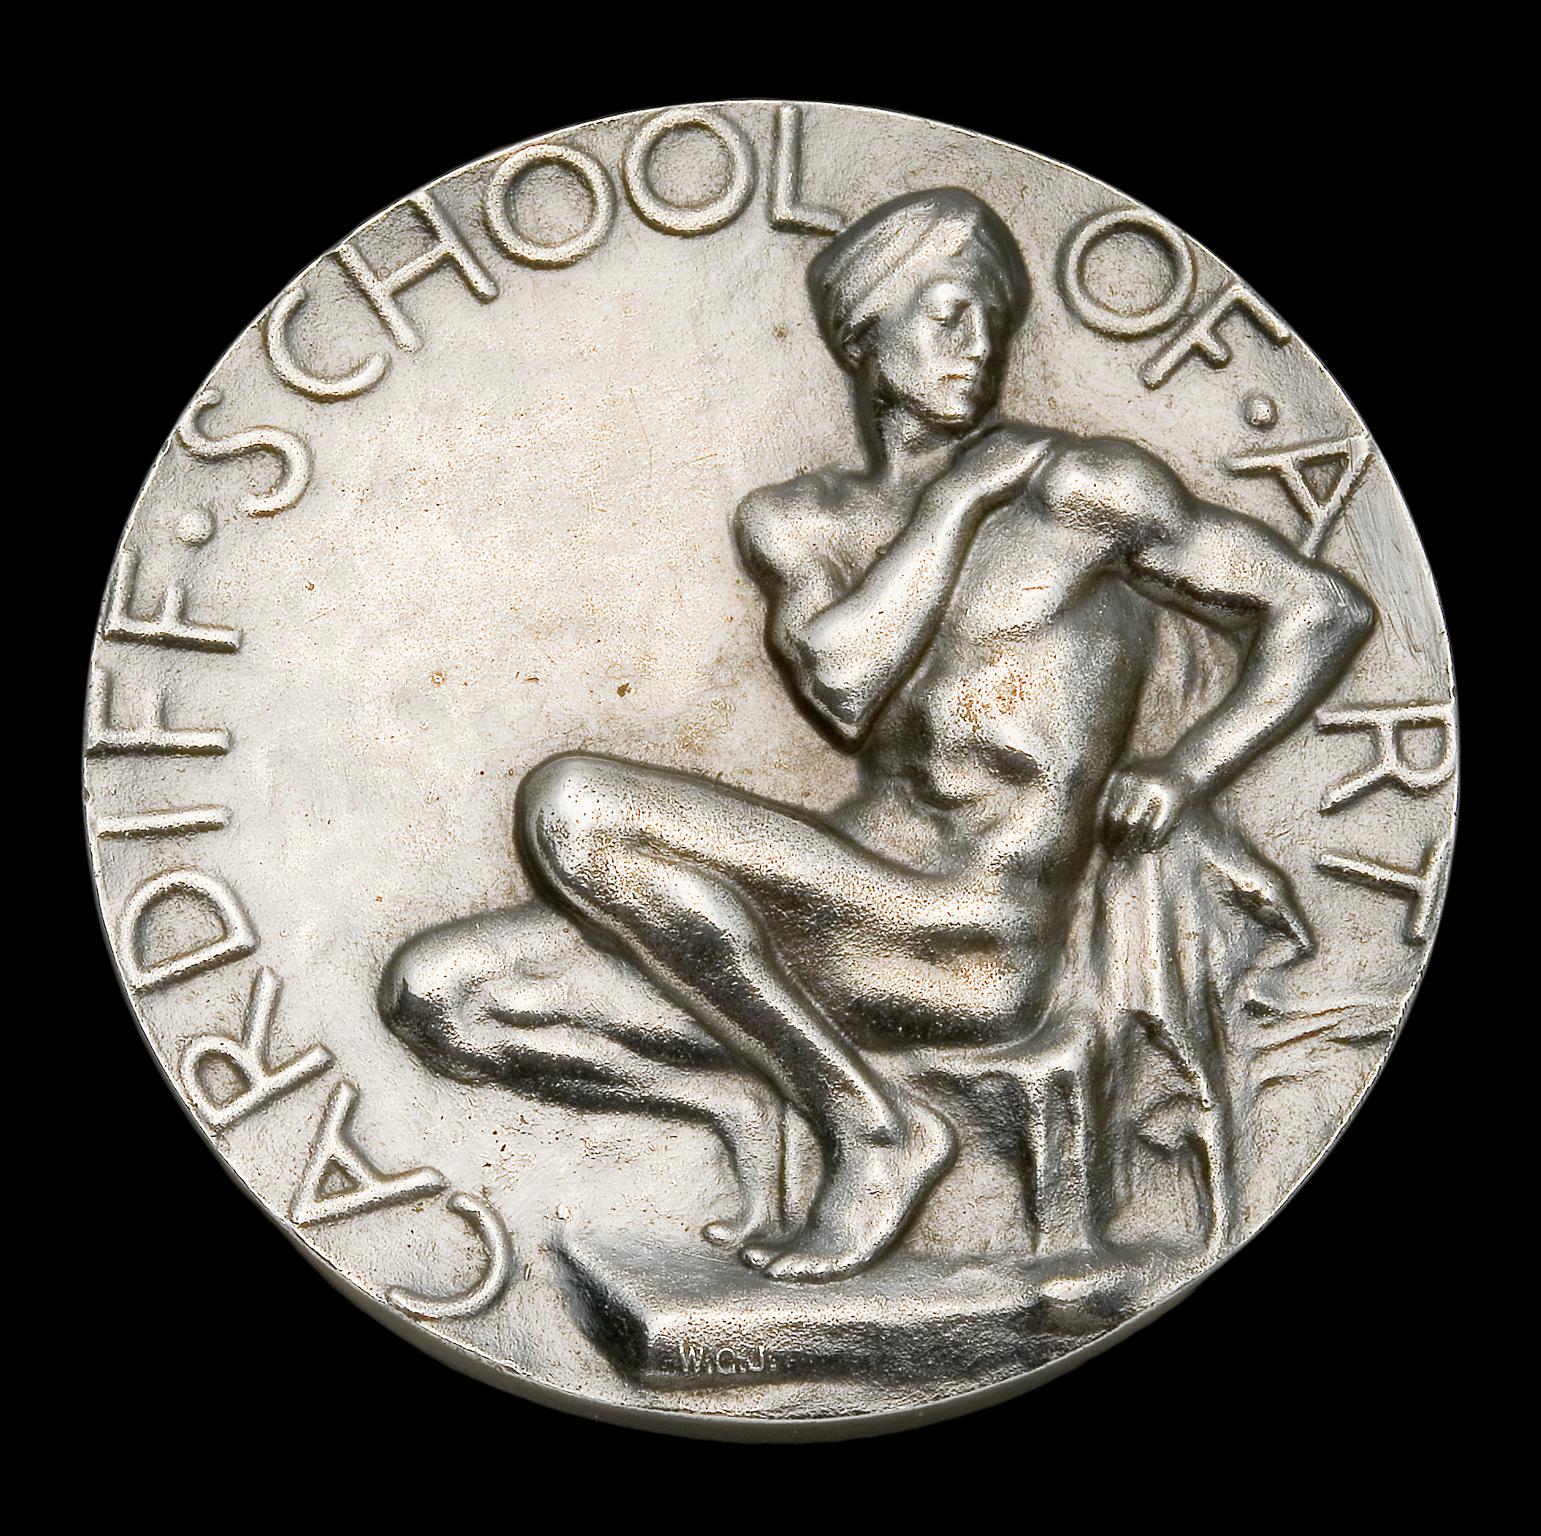 Goscombe John medal, Cardiff School of Art- revers